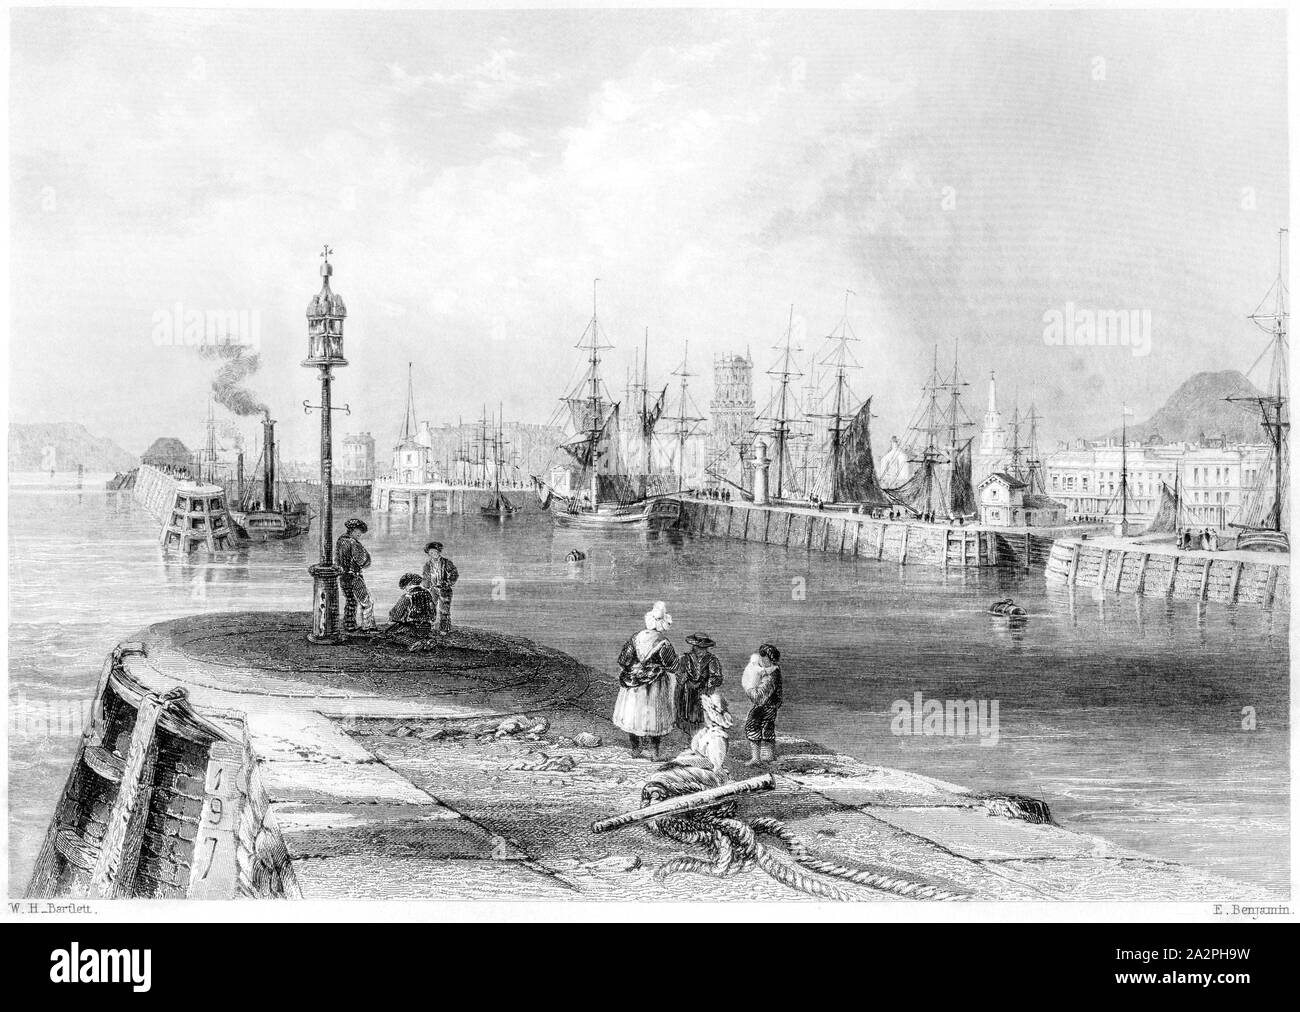 Eine Gravur der Einfahrt in den Hafen von Dundee gescannt und in hoher Auflösung aus einem Buch im Jahre 1842 gedruckt. Glaubten copyright frei. Stockfoto